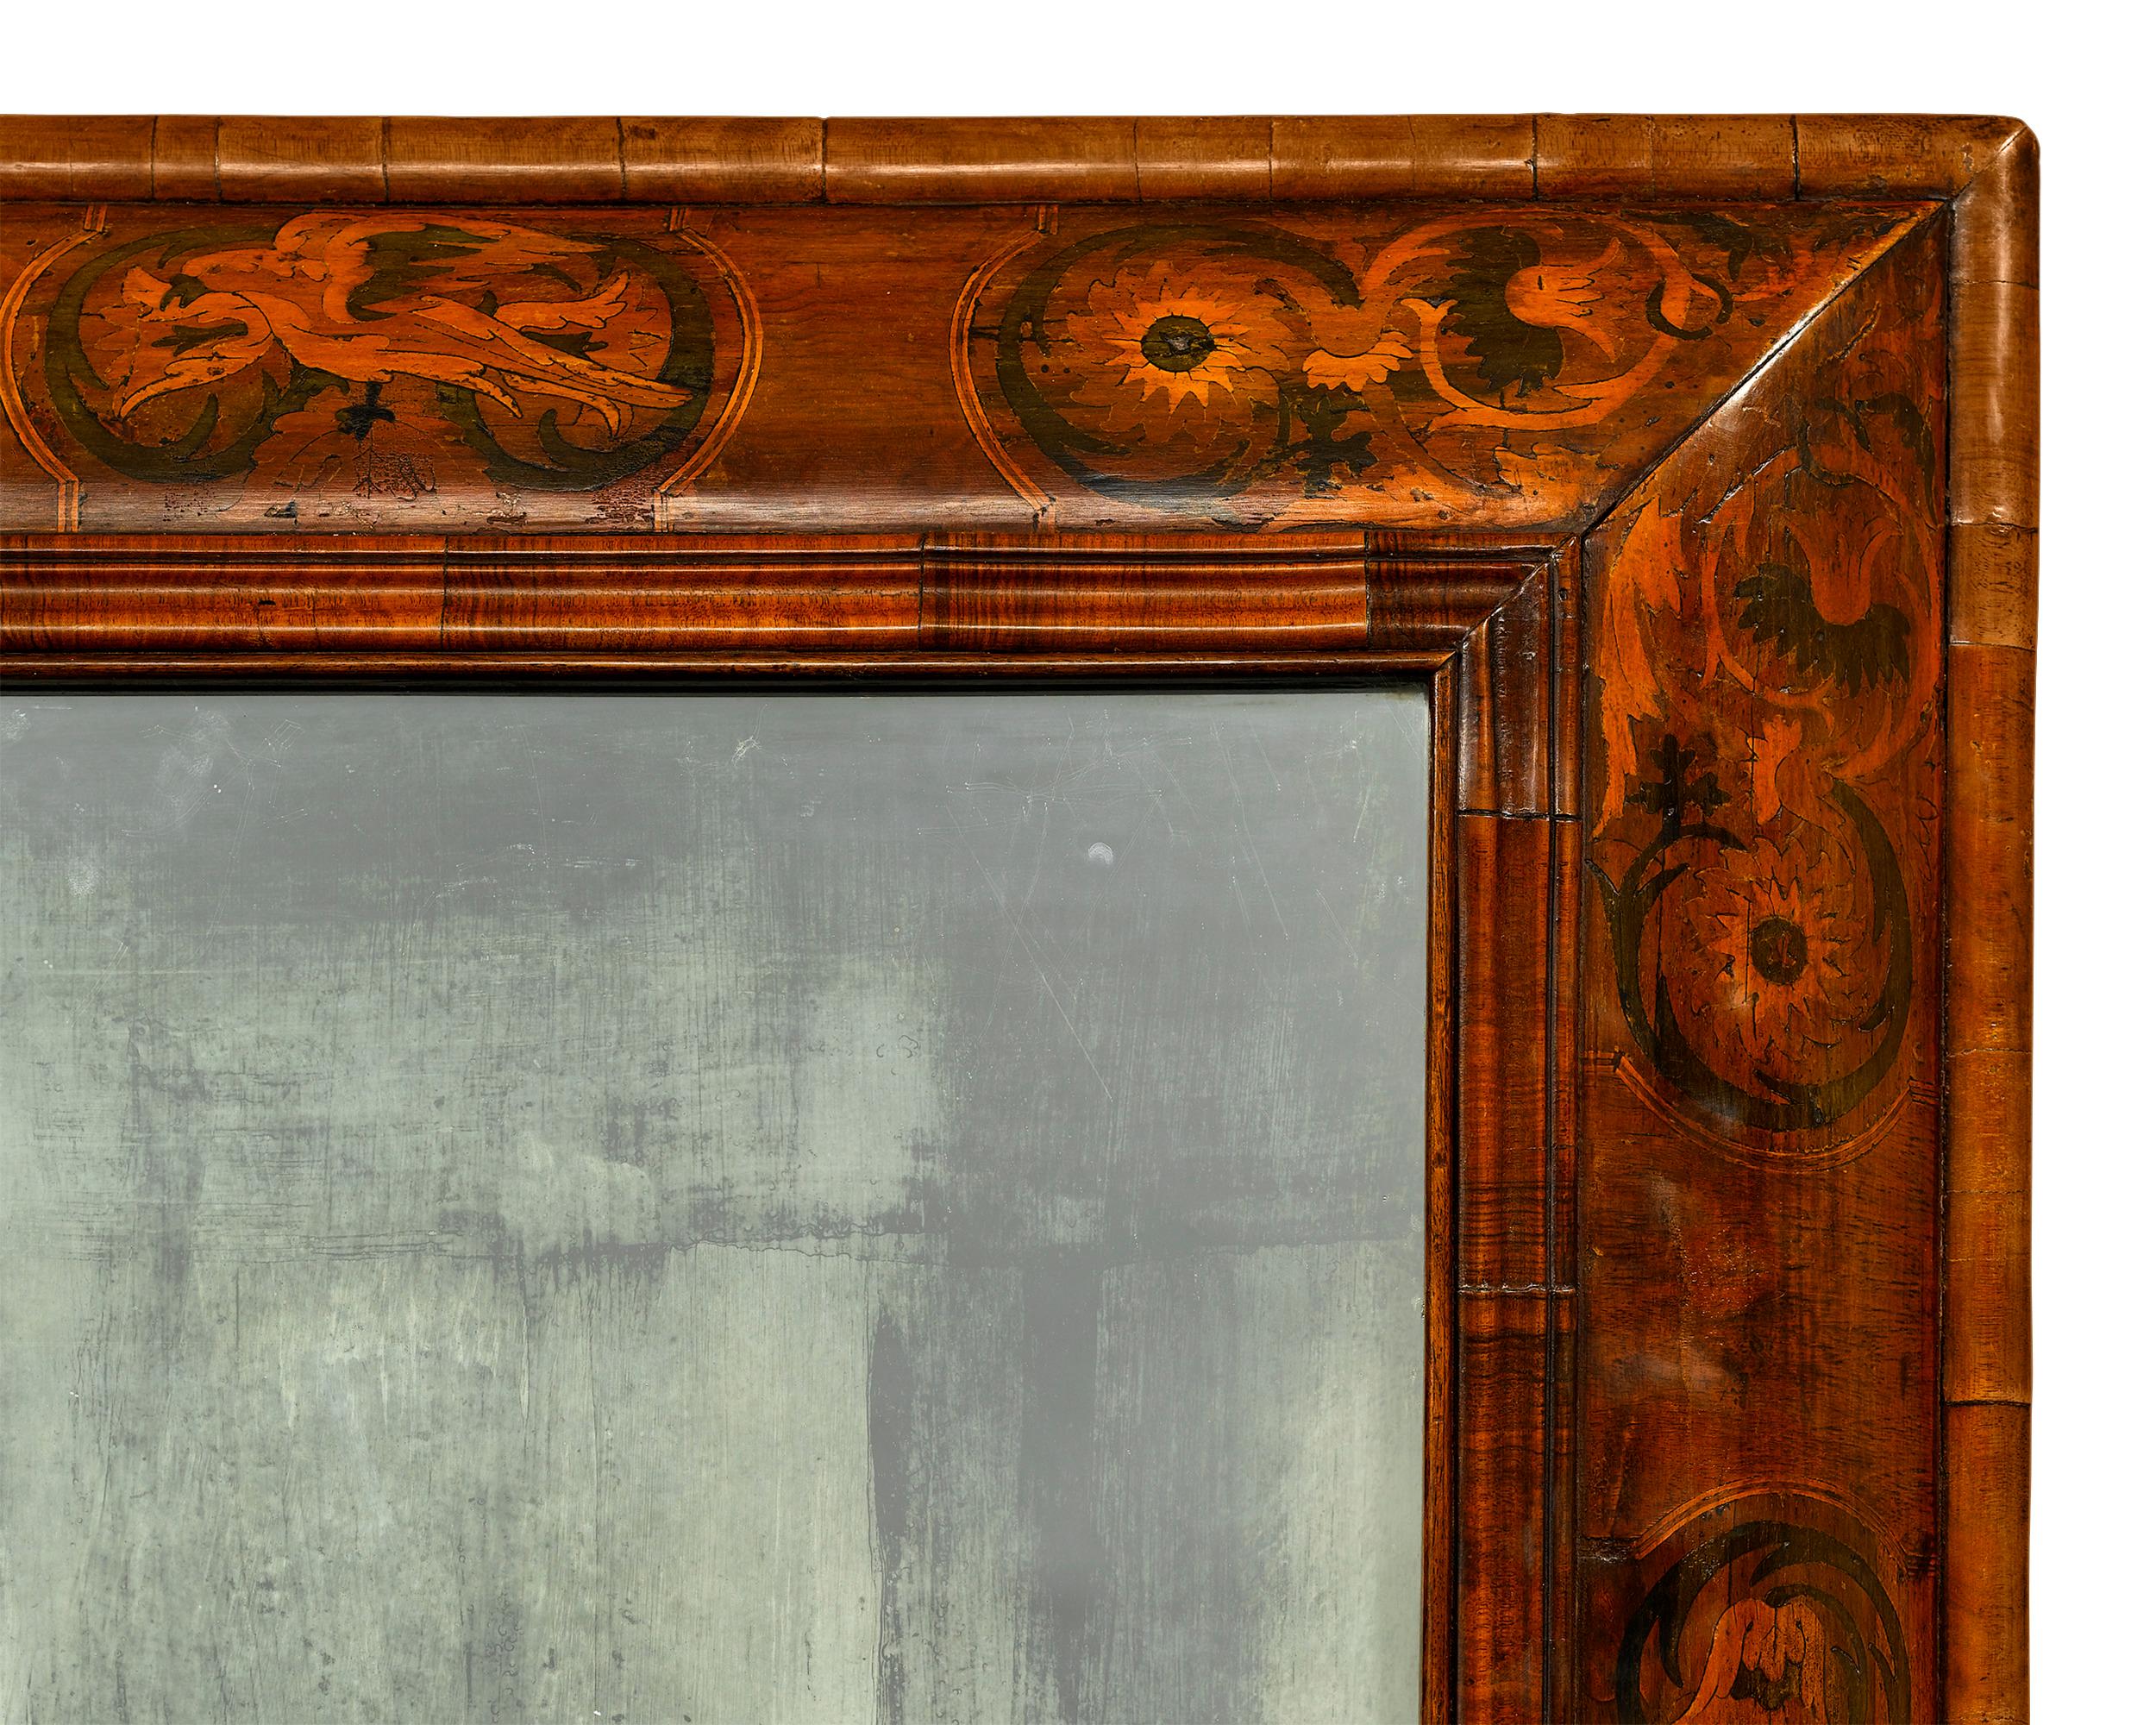 Le verre à miroir était un luxe particulier à la fin du XVIIe siècle, car il était rare et, à l'époque, uniquement produit et exporté d'Italie. Un grand exemplaire comme ce miroir William and Mary, d'une rareté inouïe, aurait appartenu à une famille